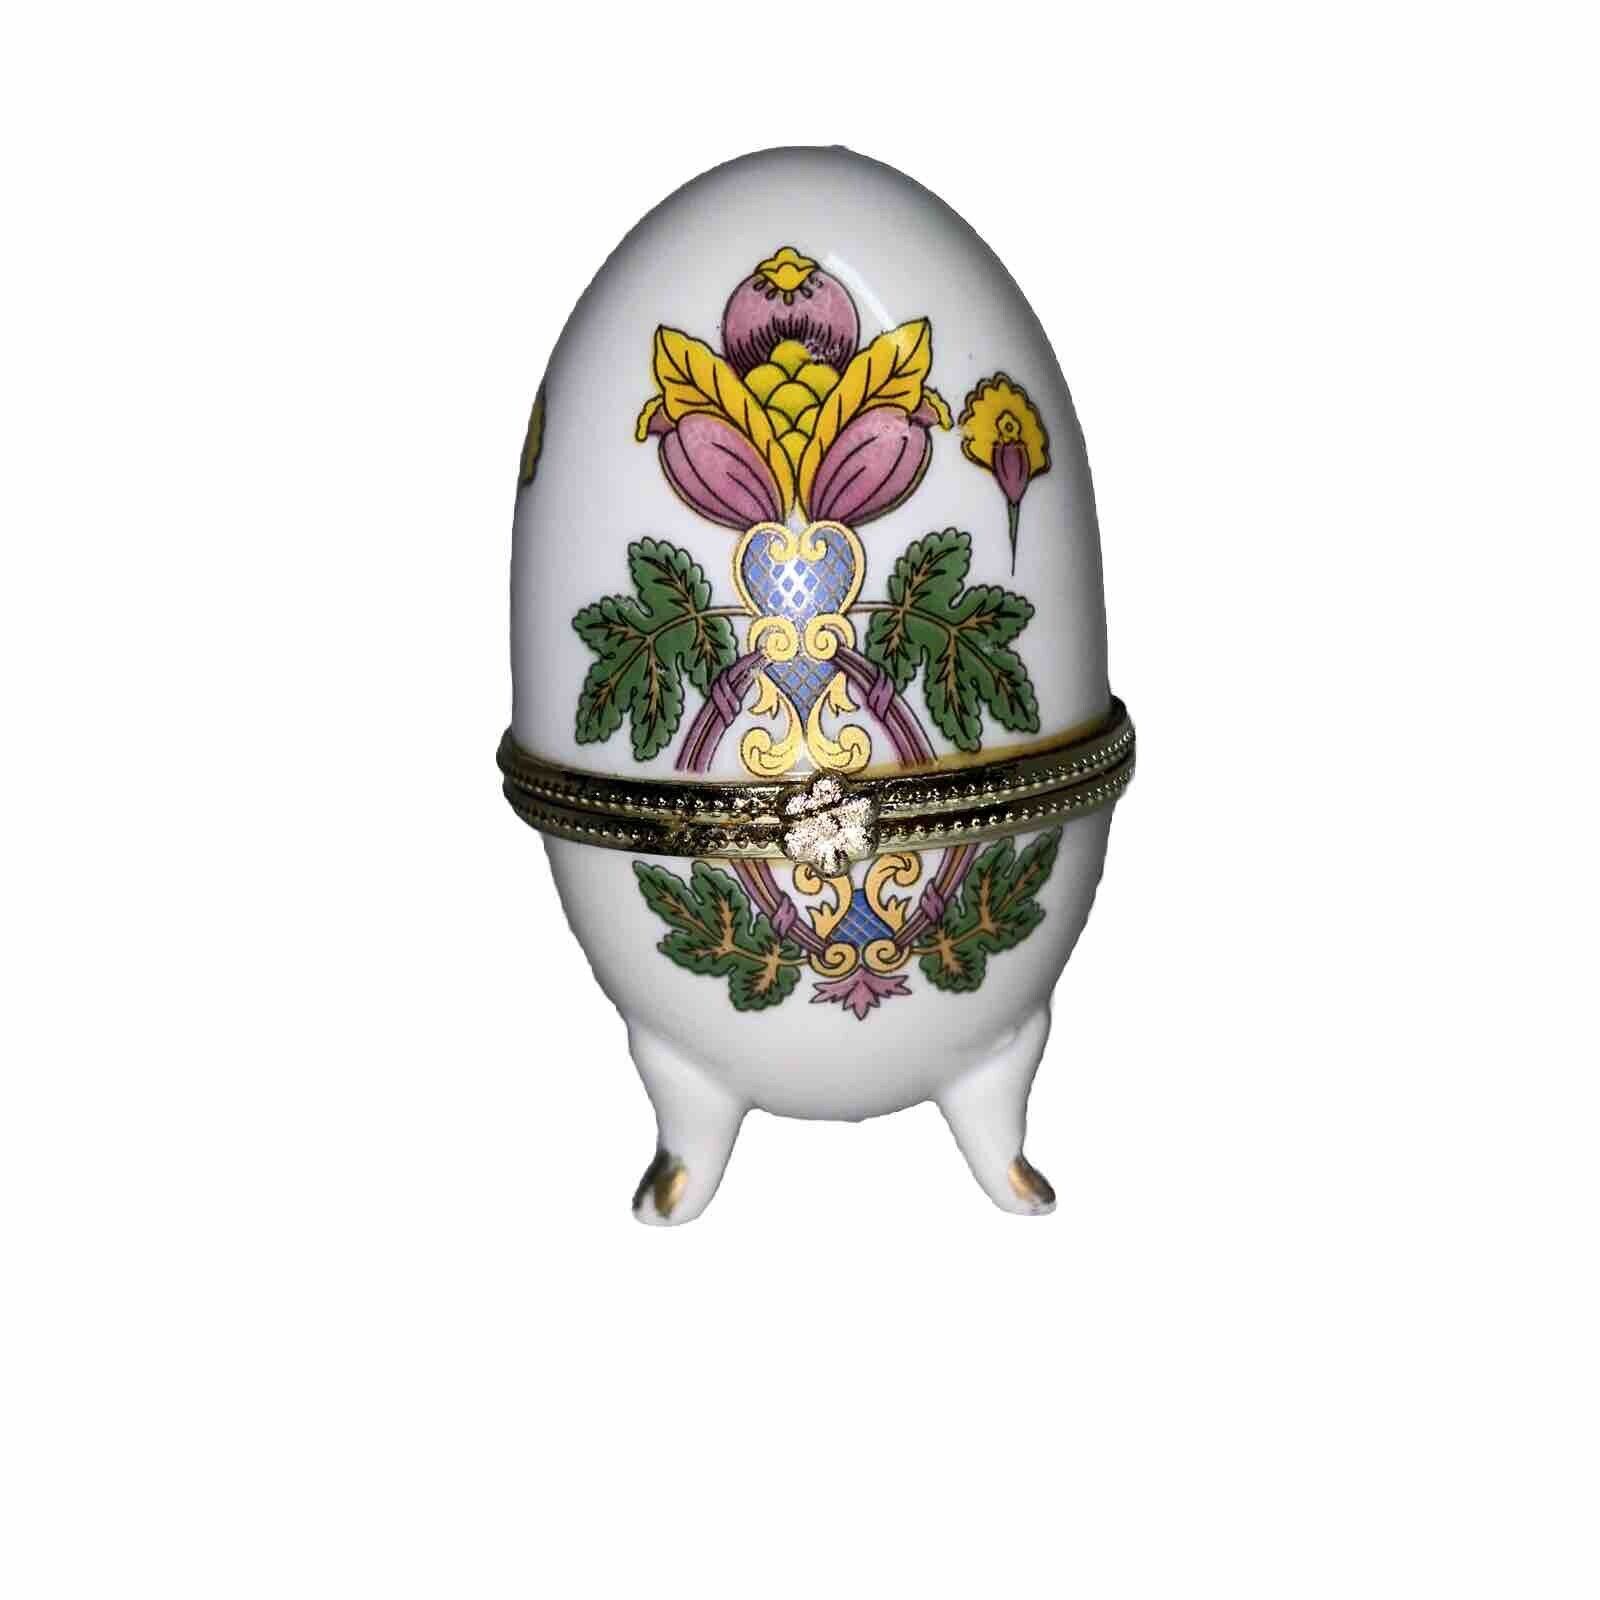 Vintage Limoges France Porcelain Egg Trinket Box Footed White Floral Print 